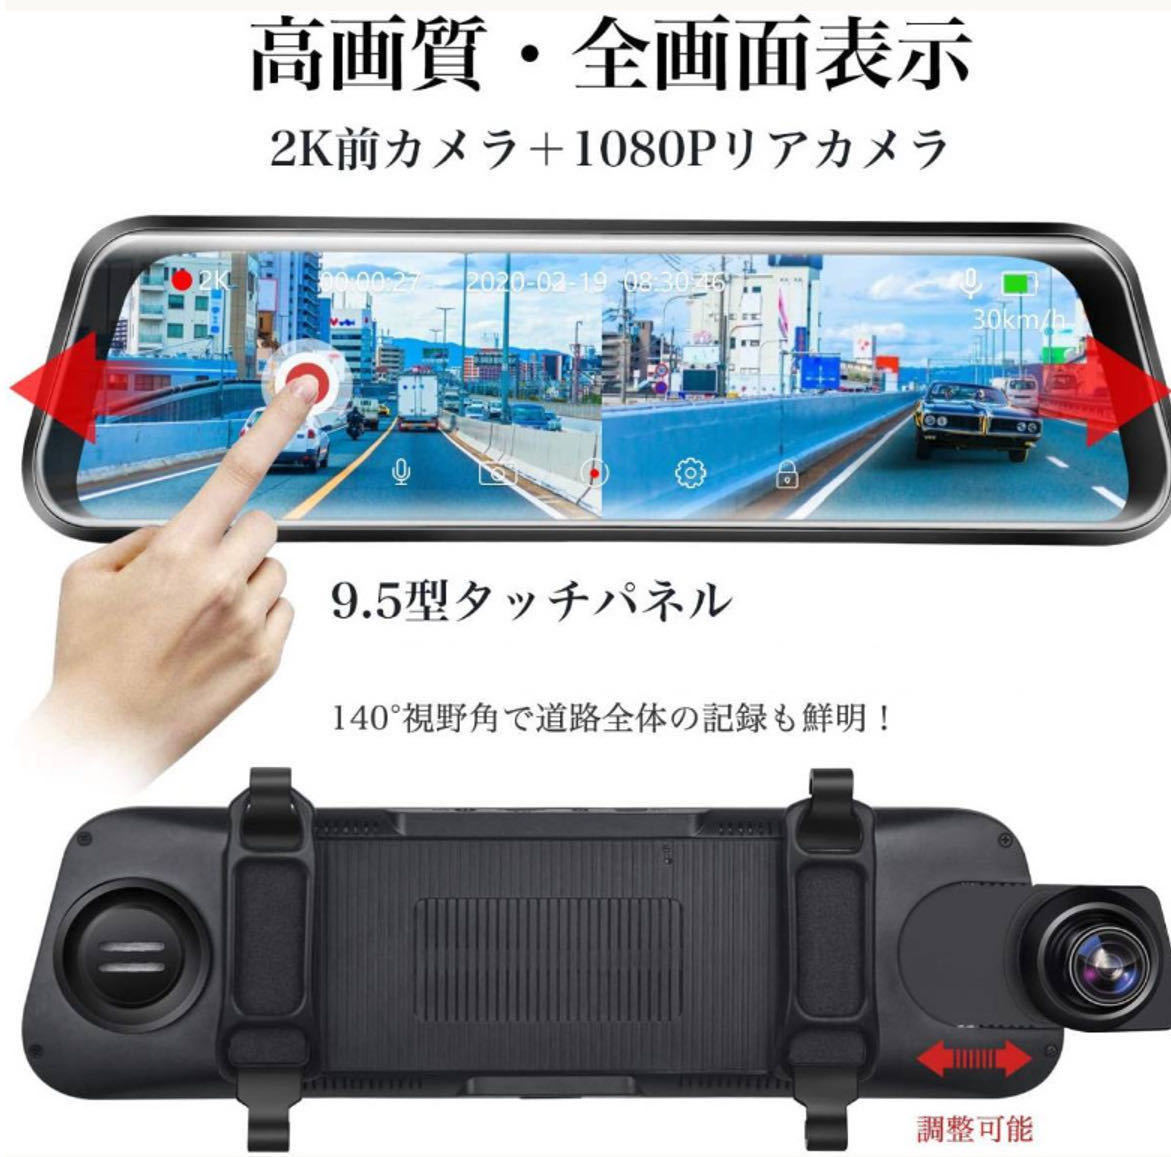 (送料無料)(新品未使用)2Kドライブレコーダー 前後2カメラ ミラー型 140°視野角 ミラー型 高感度 高画質(2560×1440) 日本語説明書付き_画像2